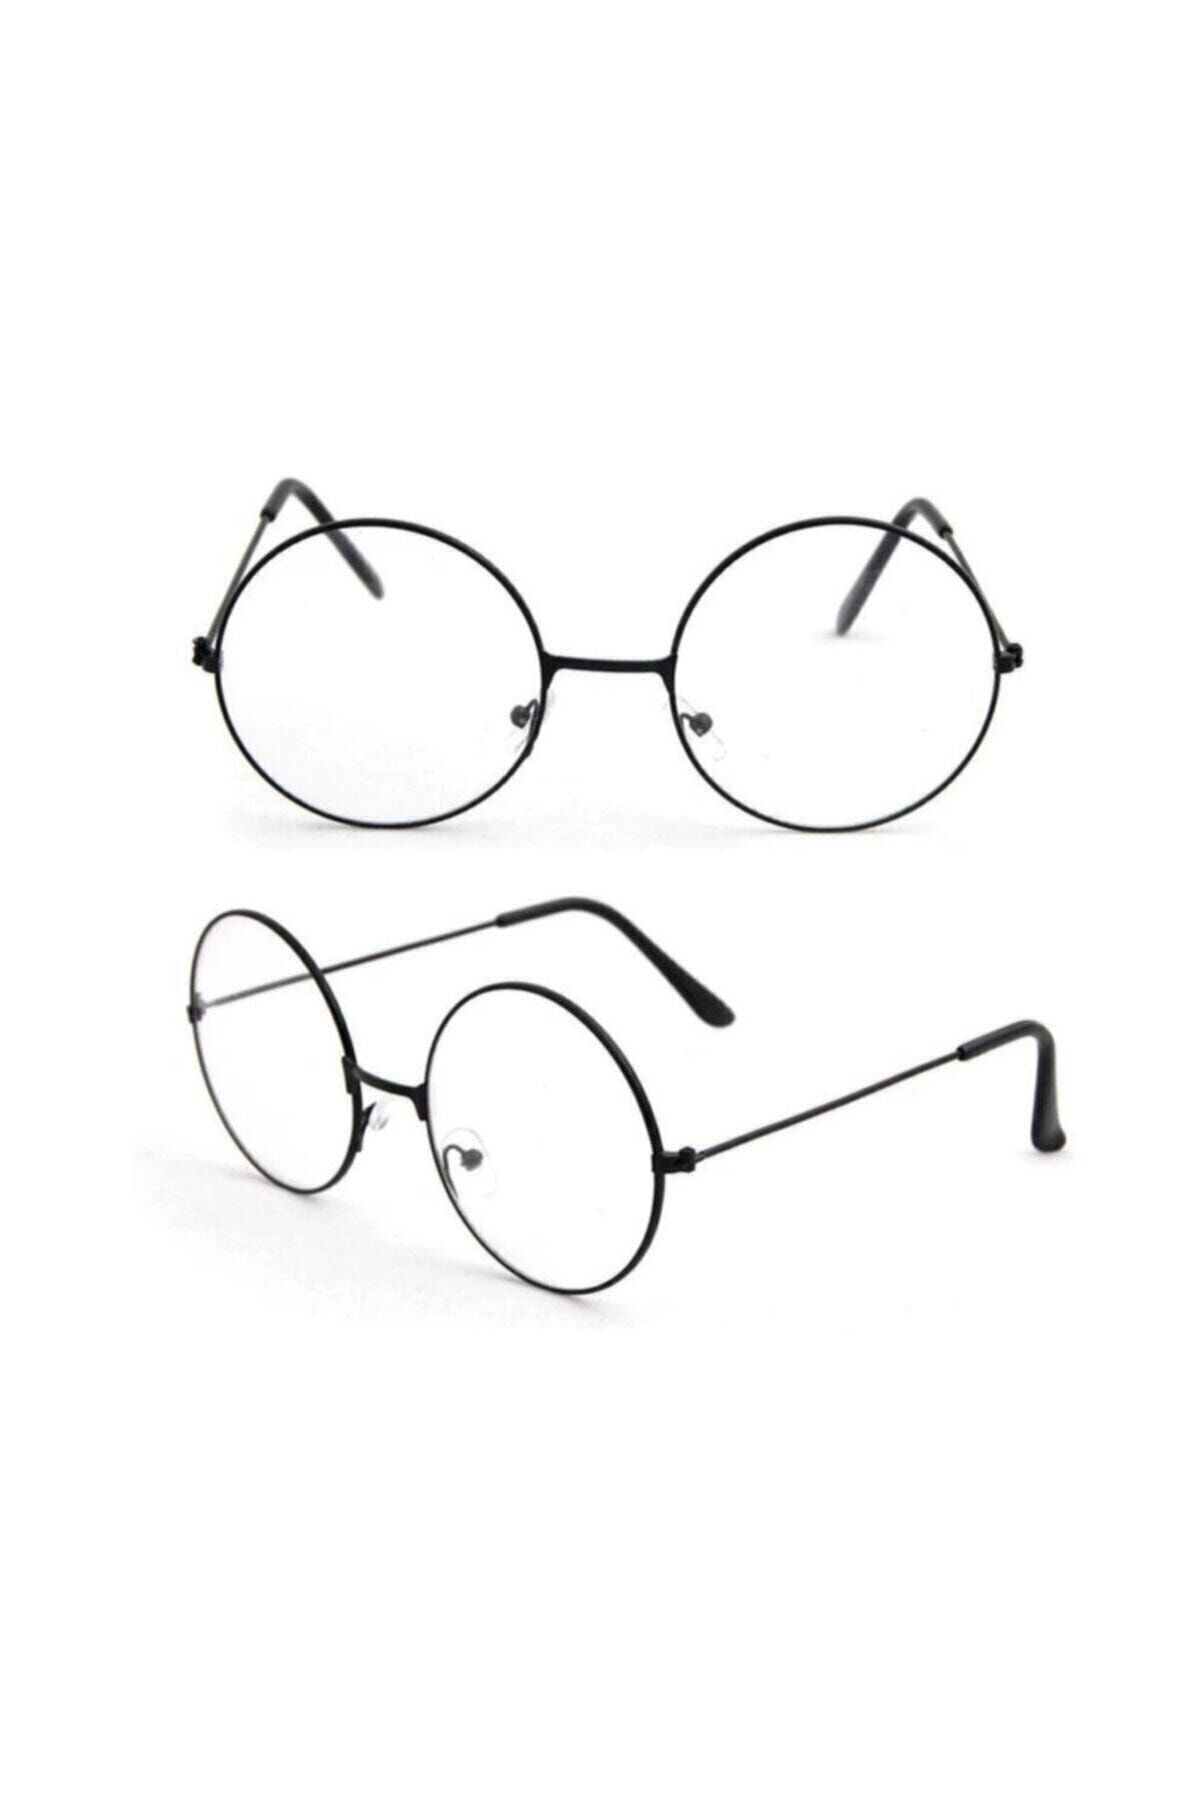 ALSANALDAN Unisex Siyah Harry Potter Anti Mavi Işınlı Retro Metal Çerçeve Şeffaf Lens Gözlük